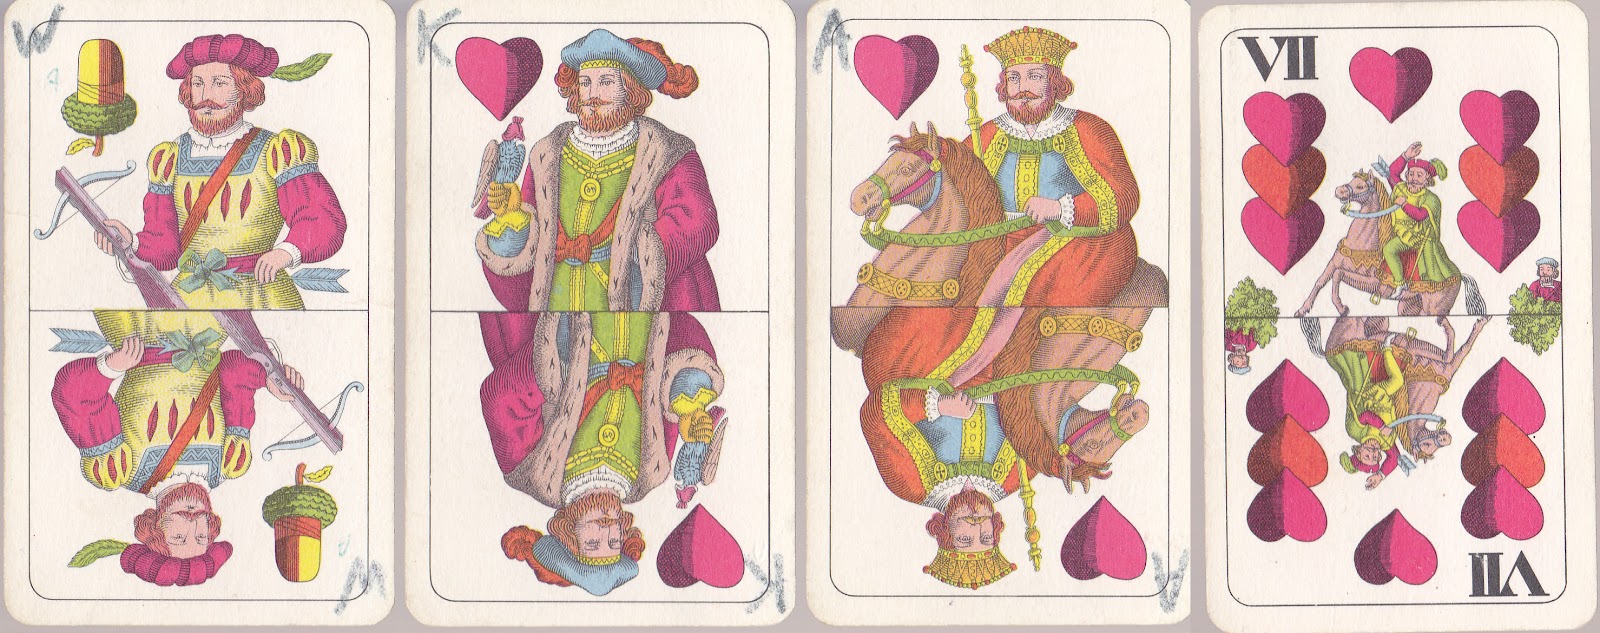 Ile Jest Króli W Talii 52 Kart Kolekcjoner talii kart: Czechosłowackie Dwugłowe v.1 - karty